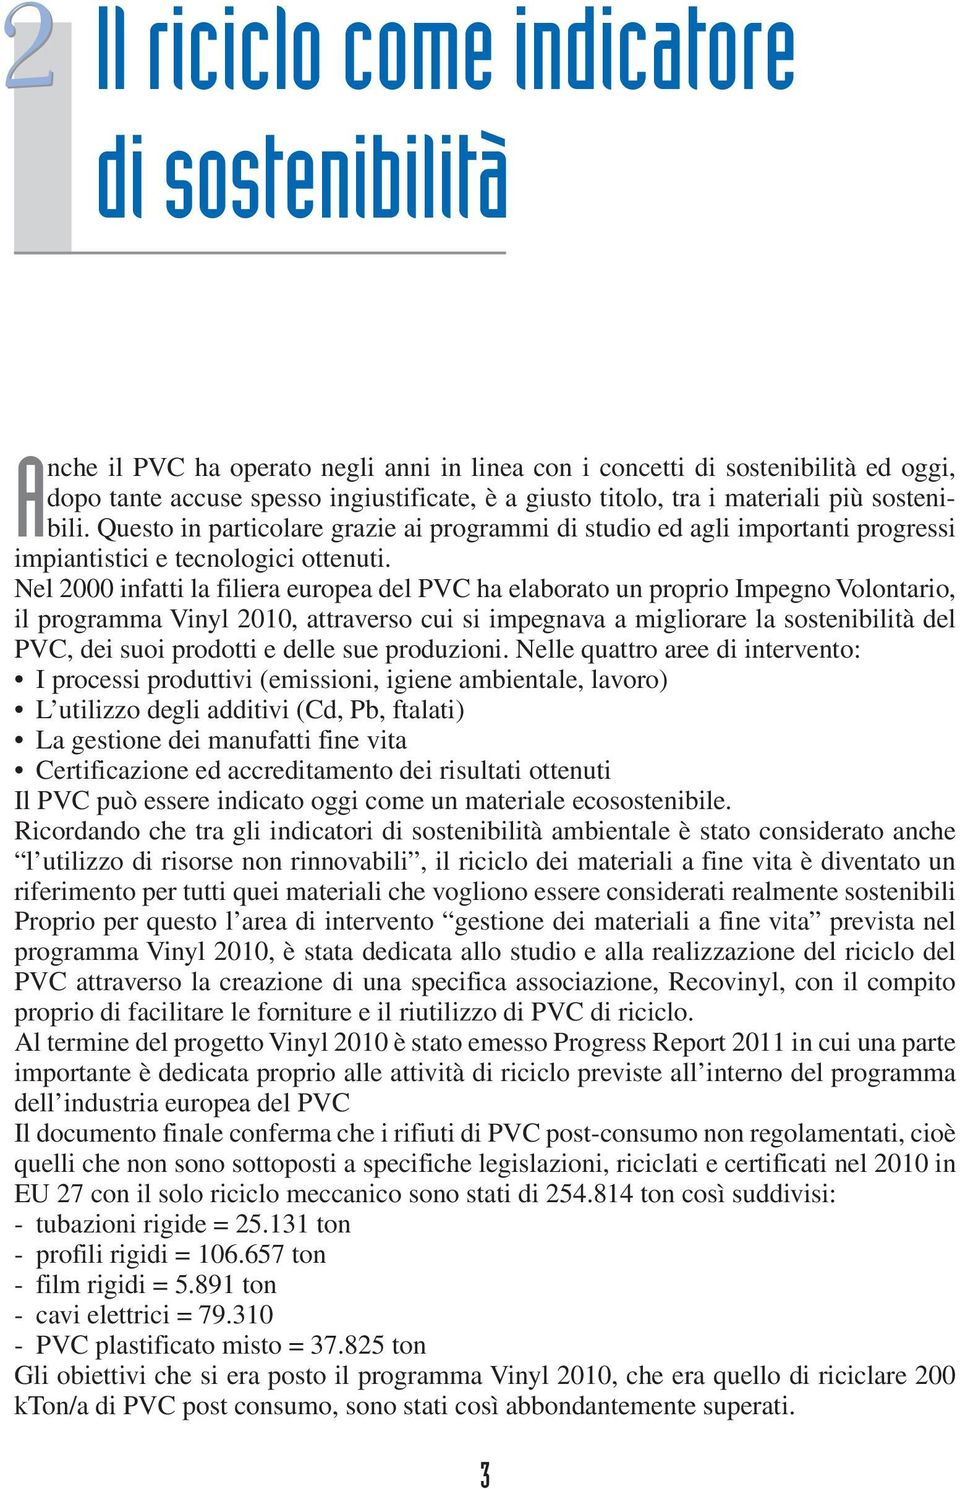 Nel 2000 infatti la filiera europea del PVC ha elaborato un proprio Impegno Volontario, il programma Vinyl 2010, attraverso cui si impegnava a migliorare la sostenibilità del PVC, dei suoi prodotti e